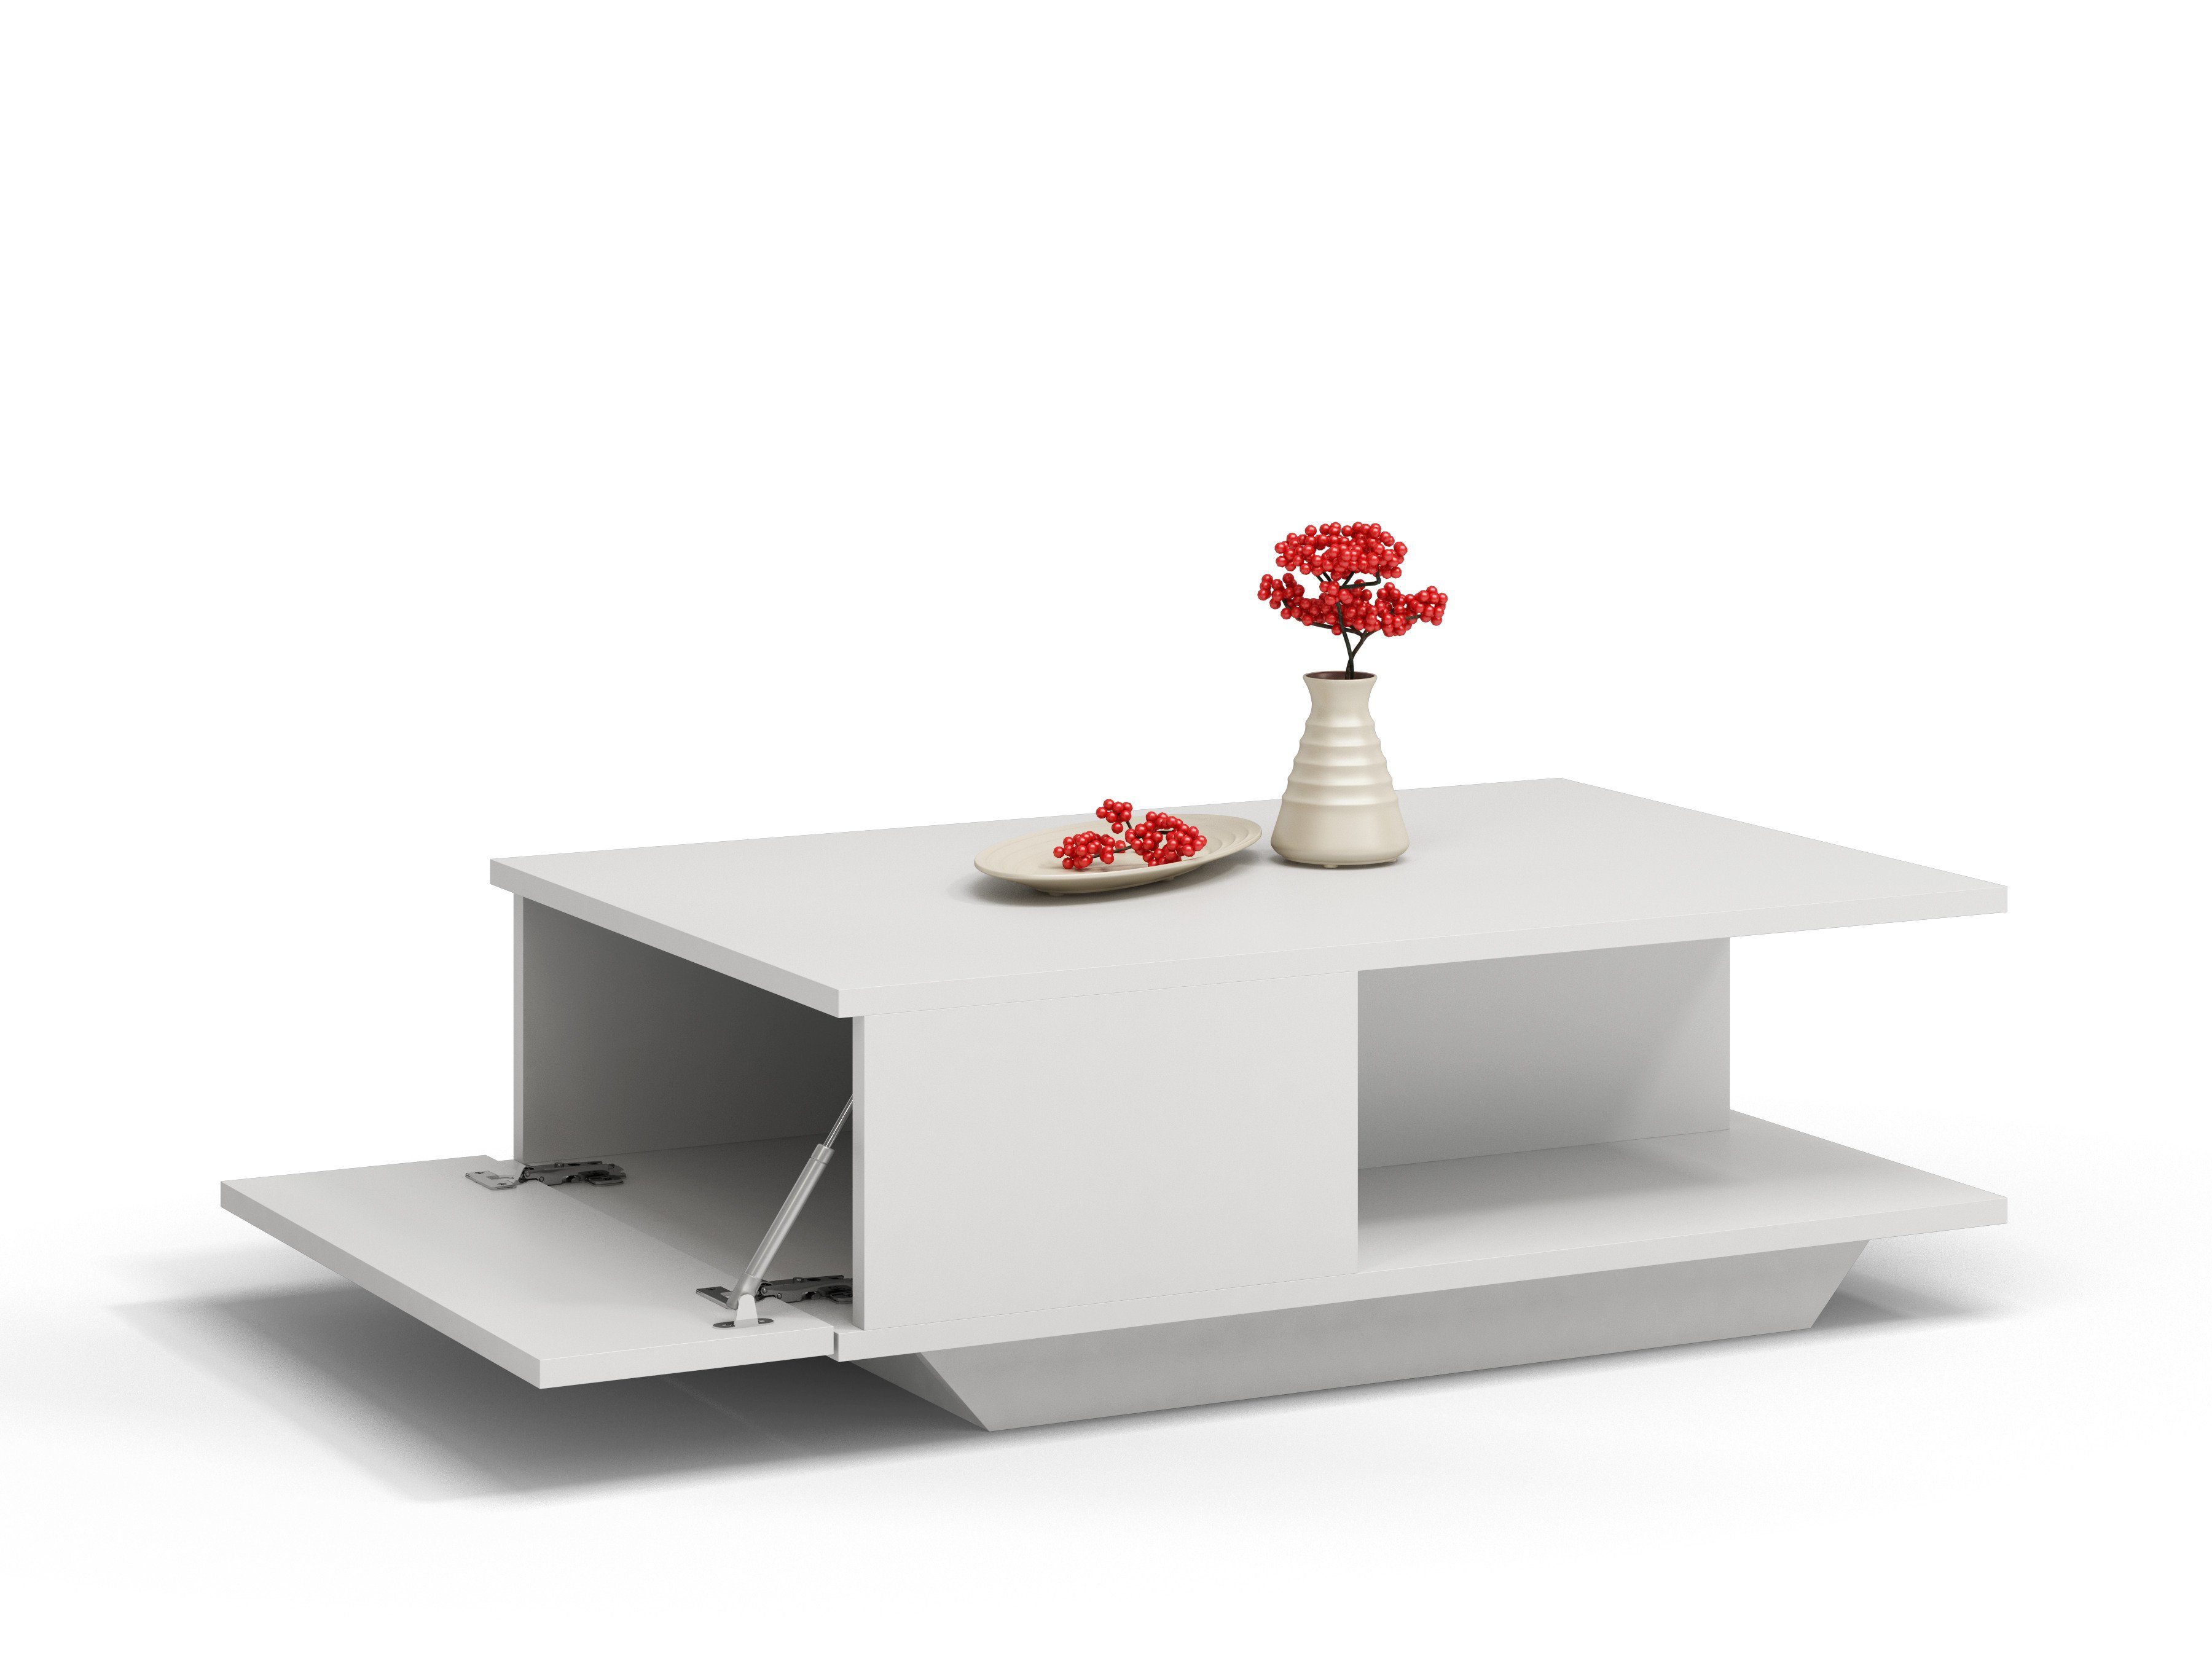 90x60x42 Beistell Design, Loft Couch, Couchtisch Tisch Beistelltisch cm kratzfeste Wohnzimmer Home Oberfläche, (LxBxH), weiß Collective